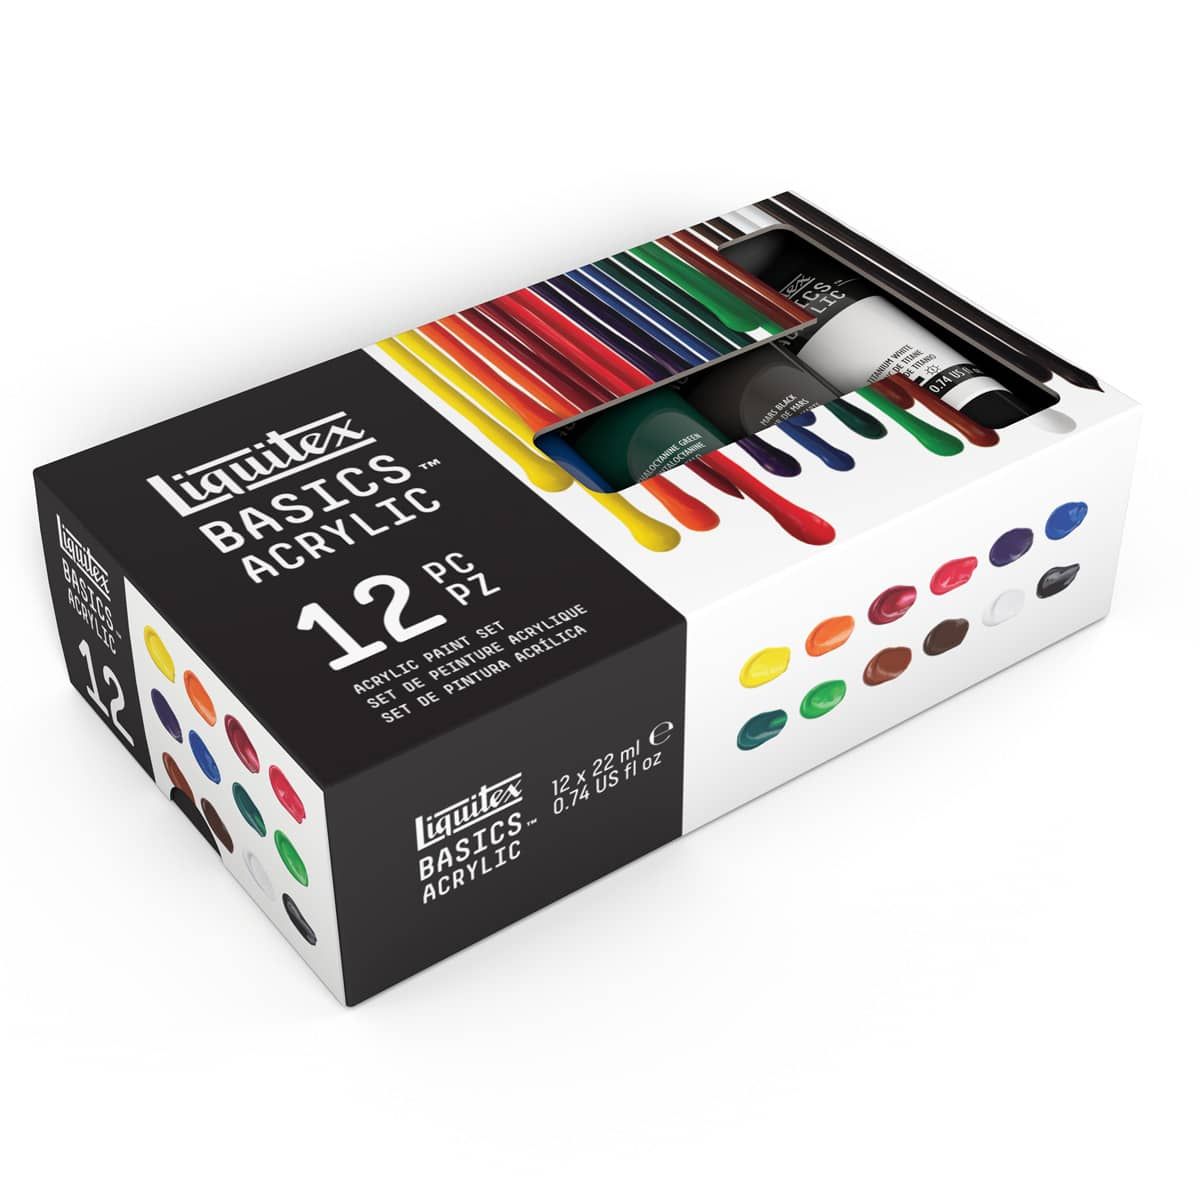  Liquitex BASICS Acrylic Paint Set, 36 x 22ml (0.74-oz